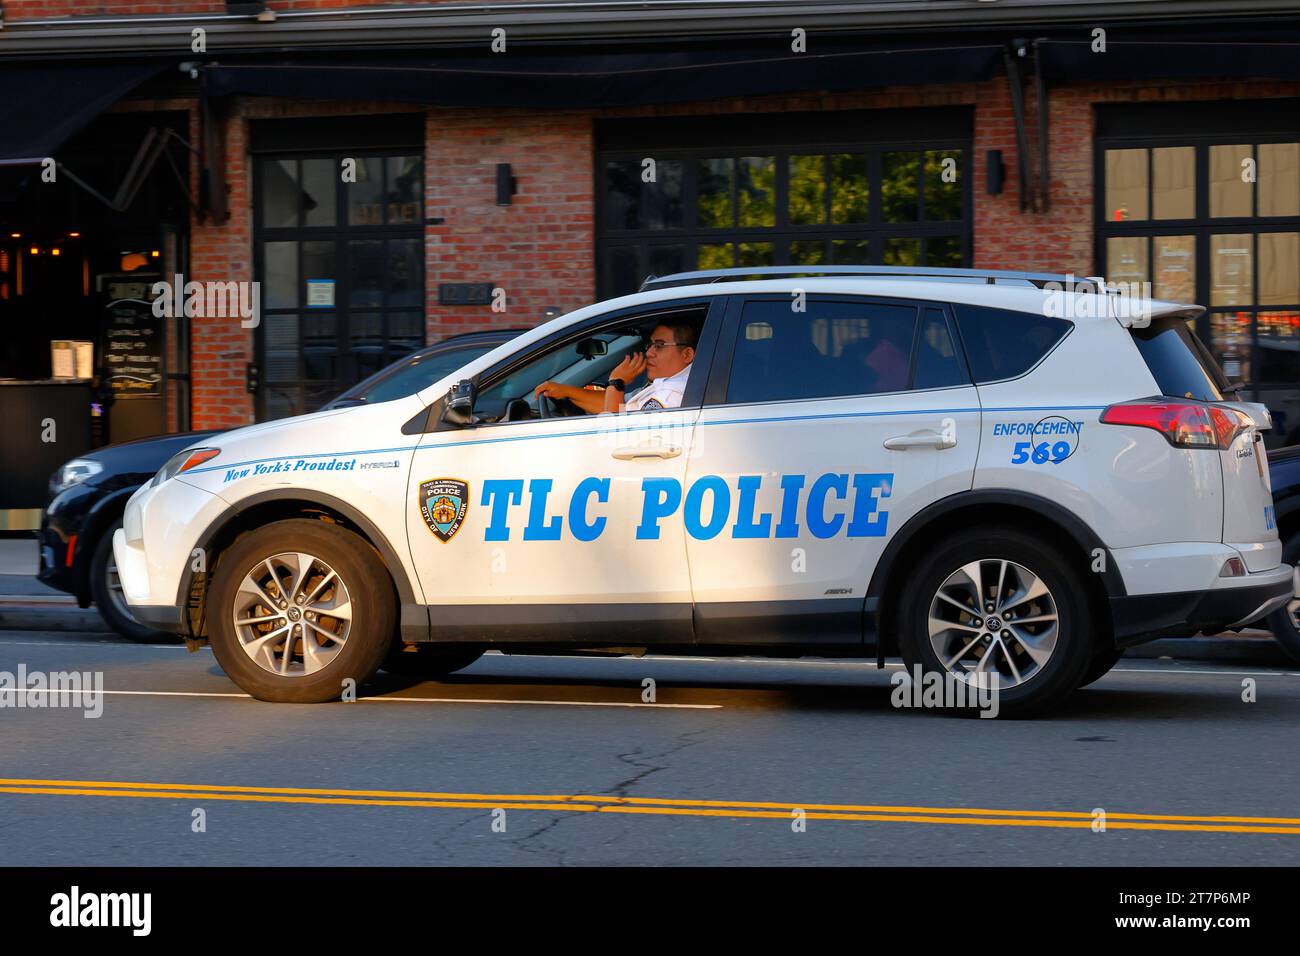 Une voiture de police NYC taxi & Limousine Commission en patrouille à New York. La police de TLC effectue des inspections et des contrôles sur les taxis et les voitures de location. Banque D'Images